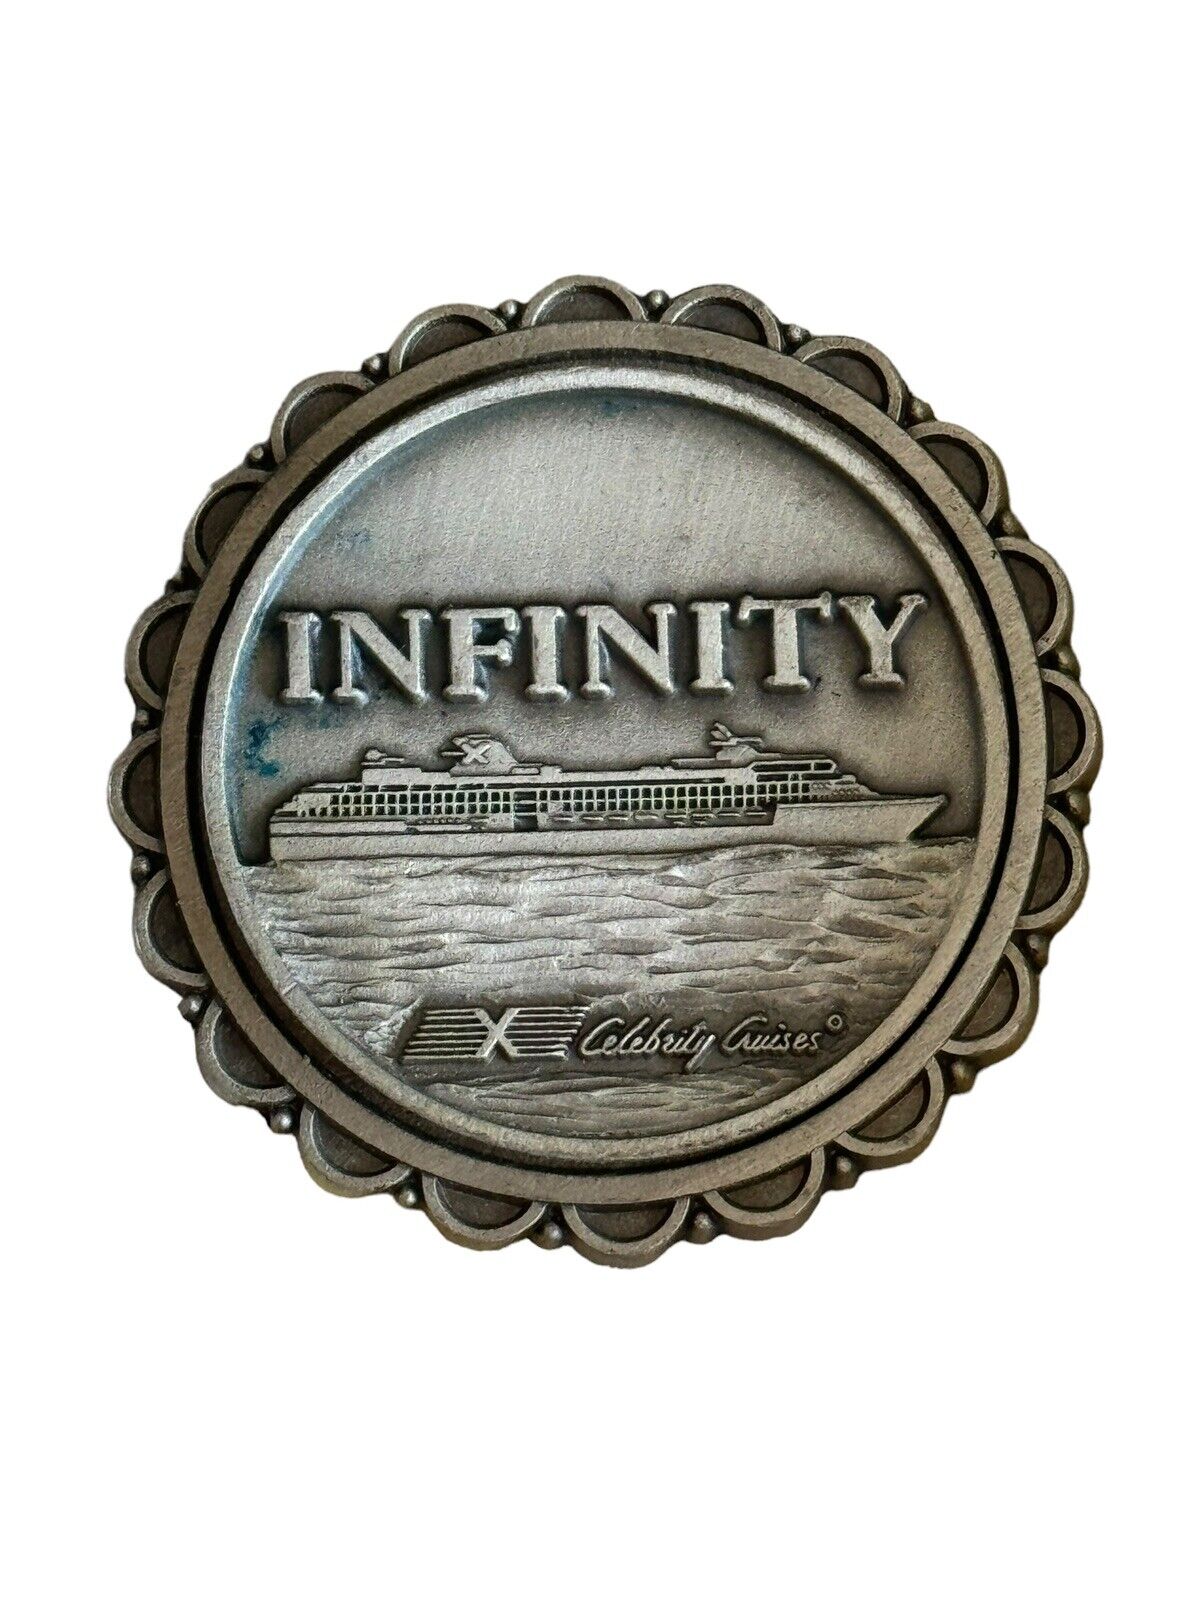 Vintage Celebrity Cruises Infinity Cruise Ship Souviner Round Fridge Magnet